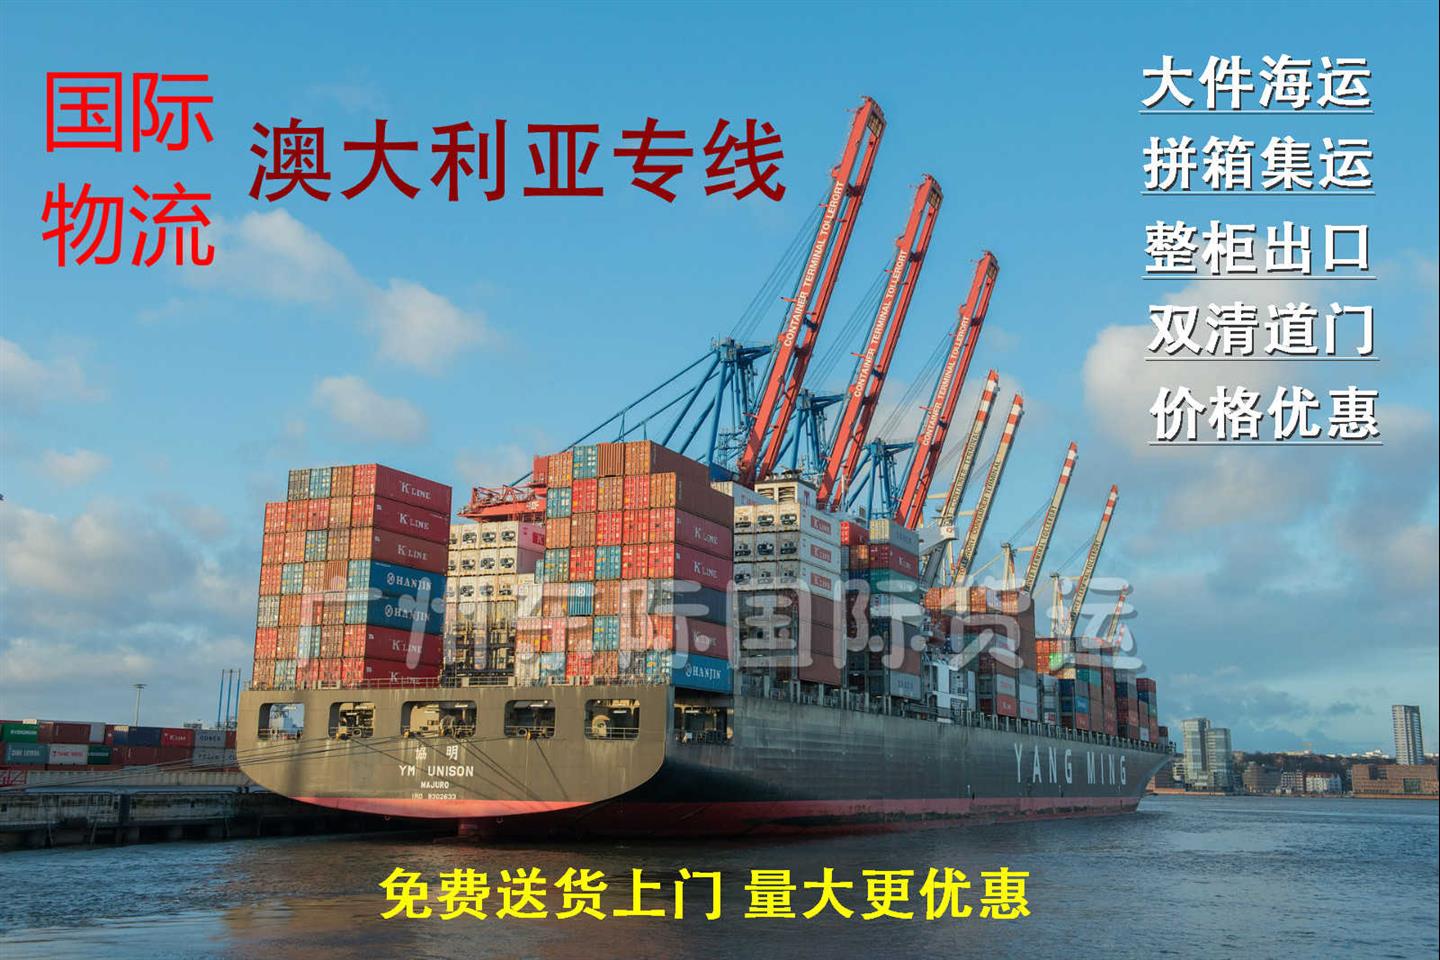 蚌埠食品到澳洲转运时间 广州东际国际货运代理有限公司